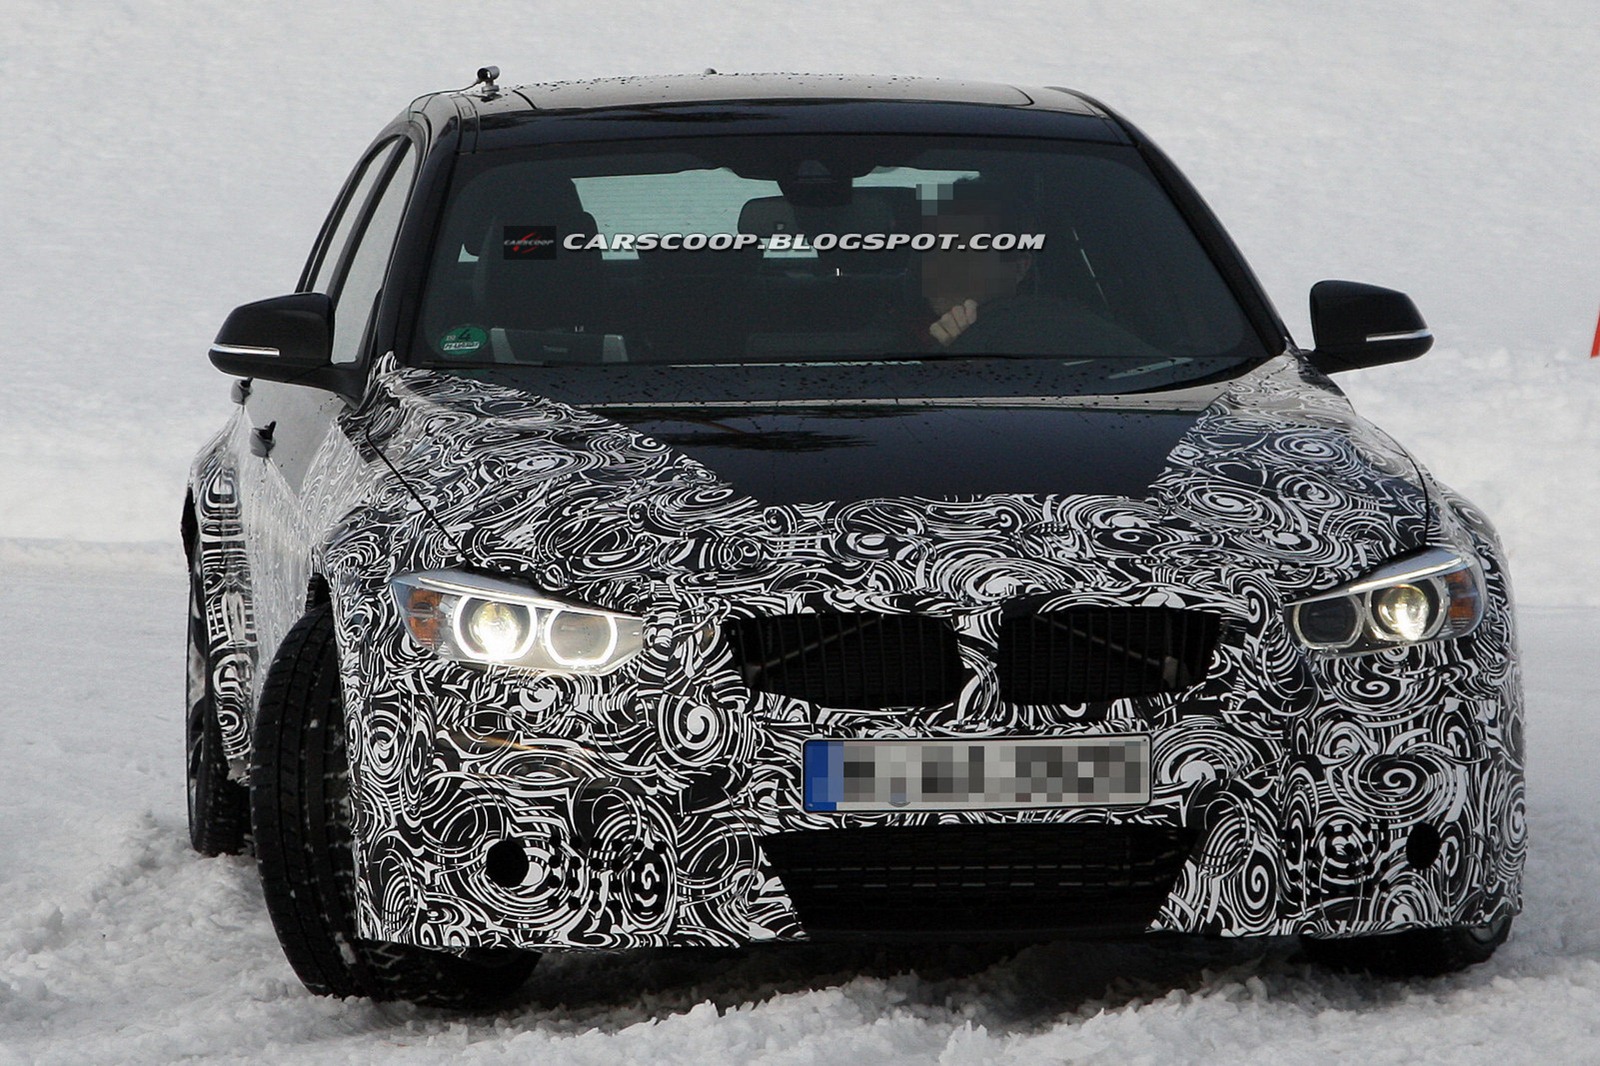 2014 F30 BMW M3 Sedan spied again